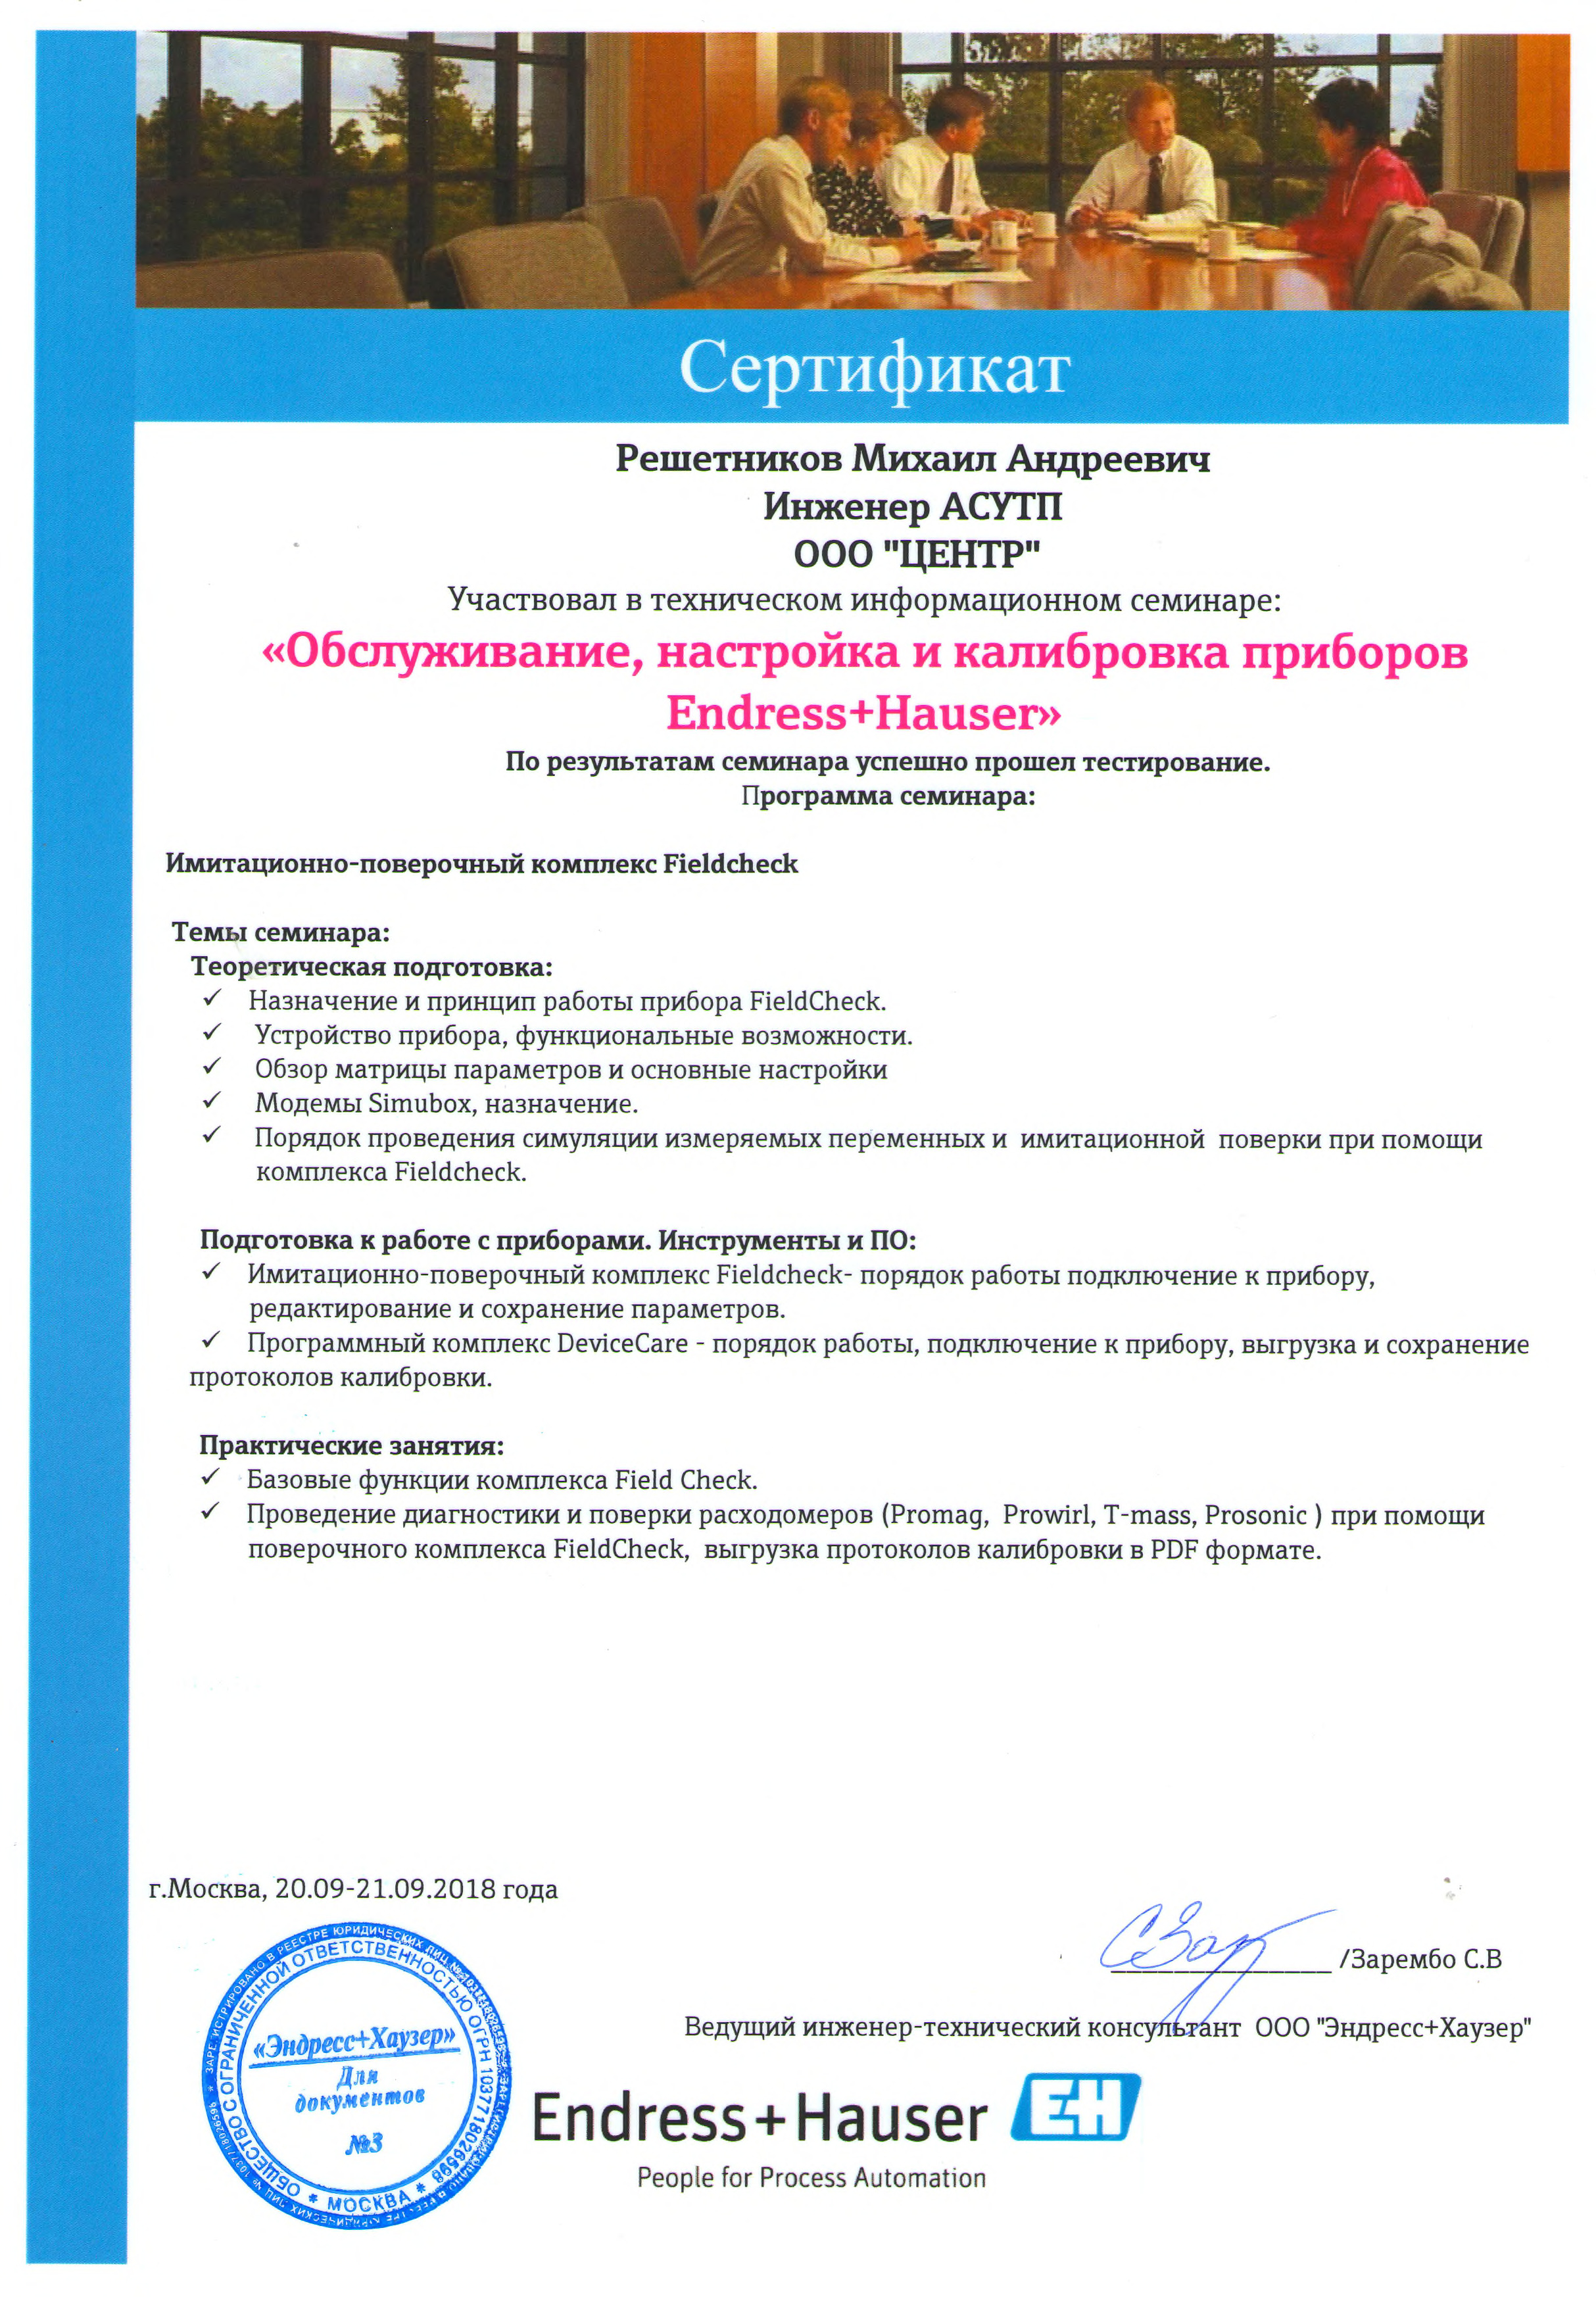 Сертификат Endress+Hauser Обслуживание и калибровка приборов (Решетников М.А.)